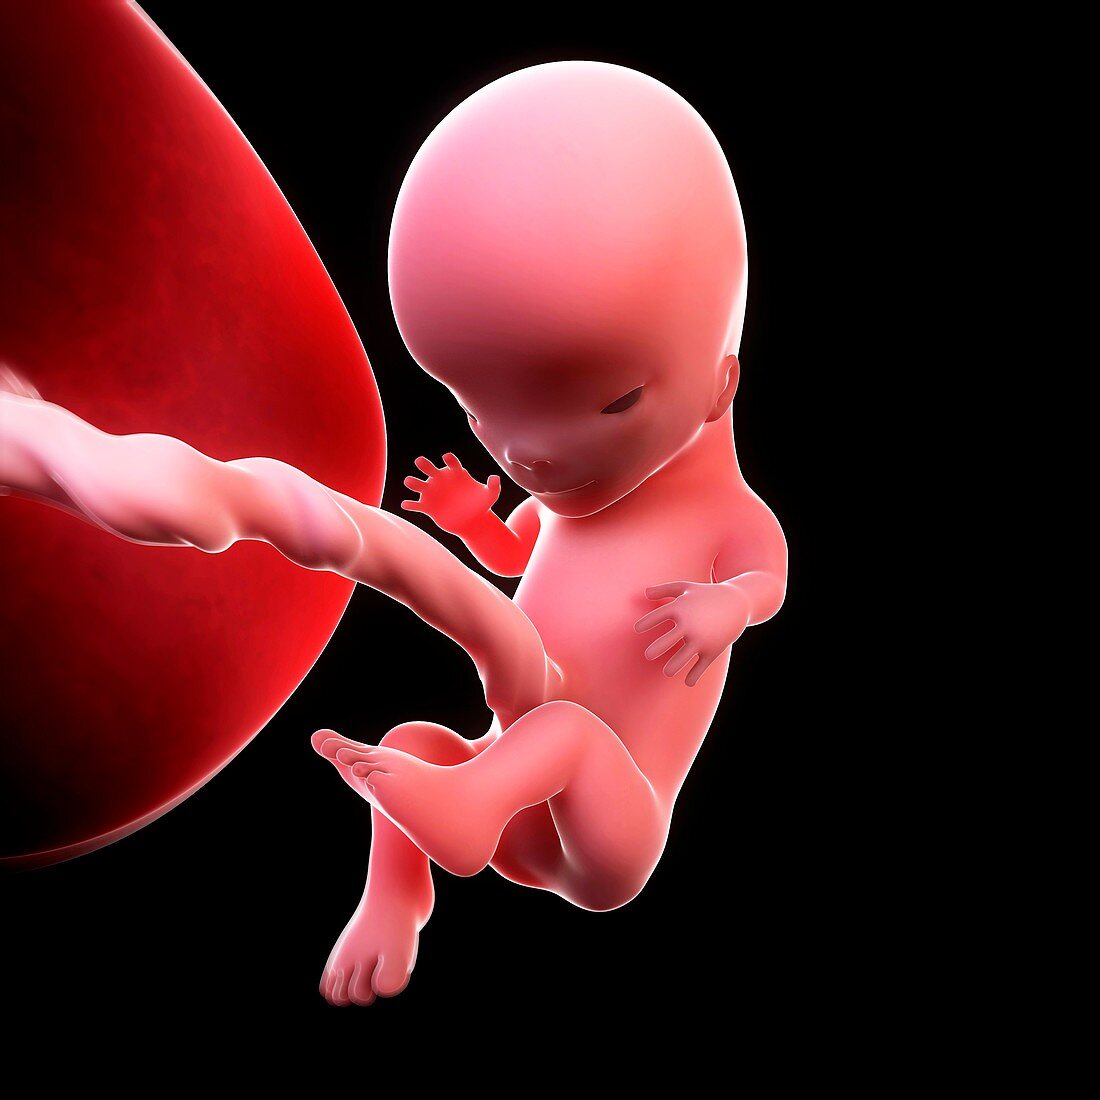 Foetus at 11 weeks,artwork